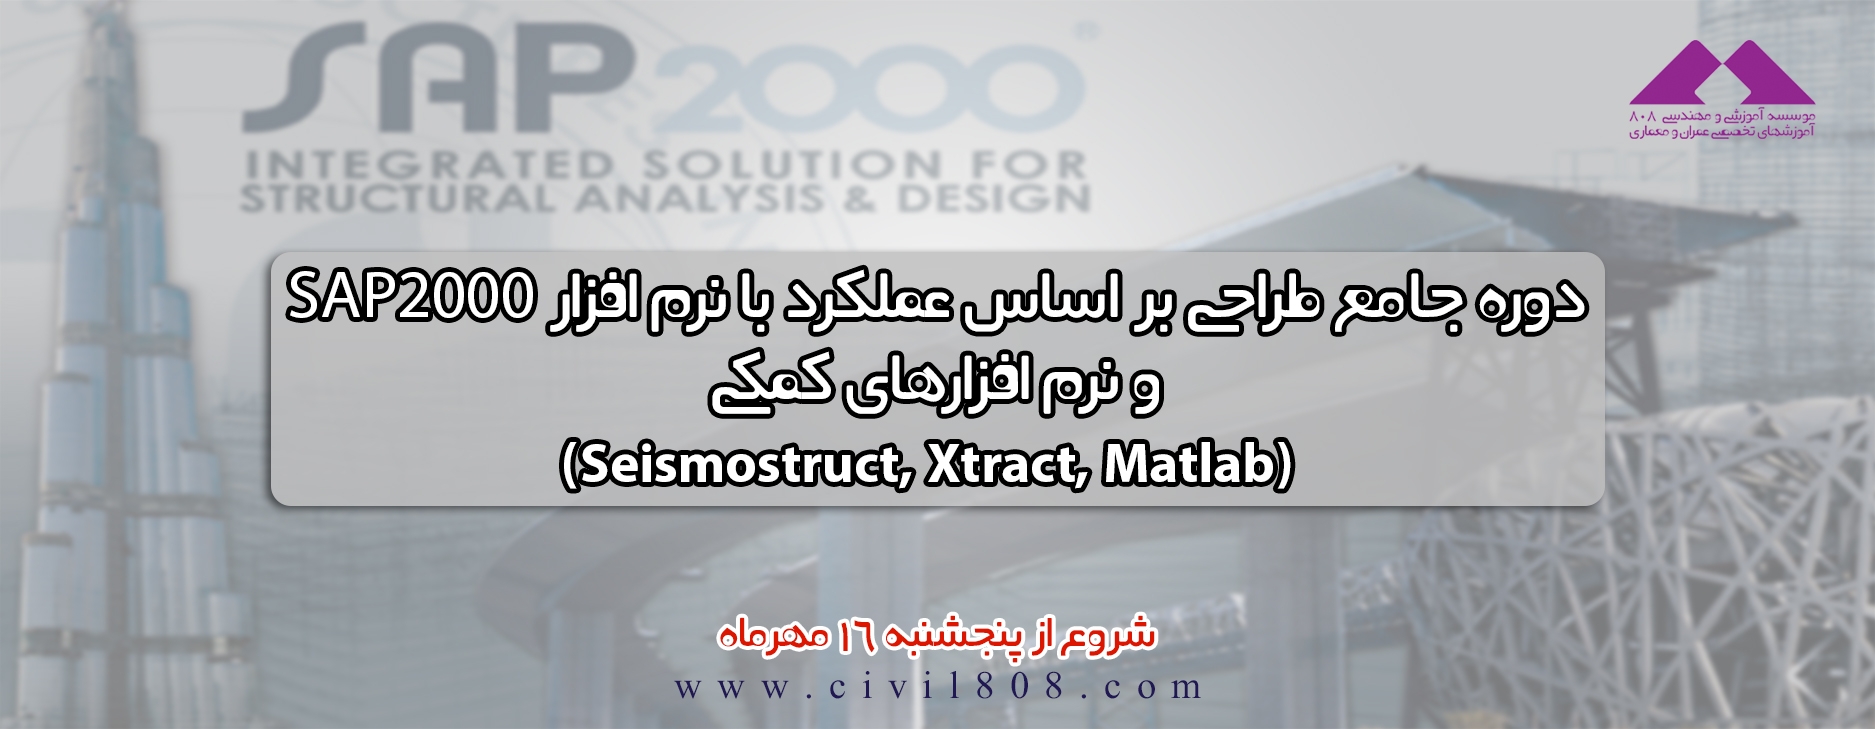 دوره جامع طراحی عملکردی و بهسازی لرزه ای با نرم افزار های sap2000 به همراه نرم افزار های کمکی MATLAB-XTRACT-SEISMOSIGNAL 